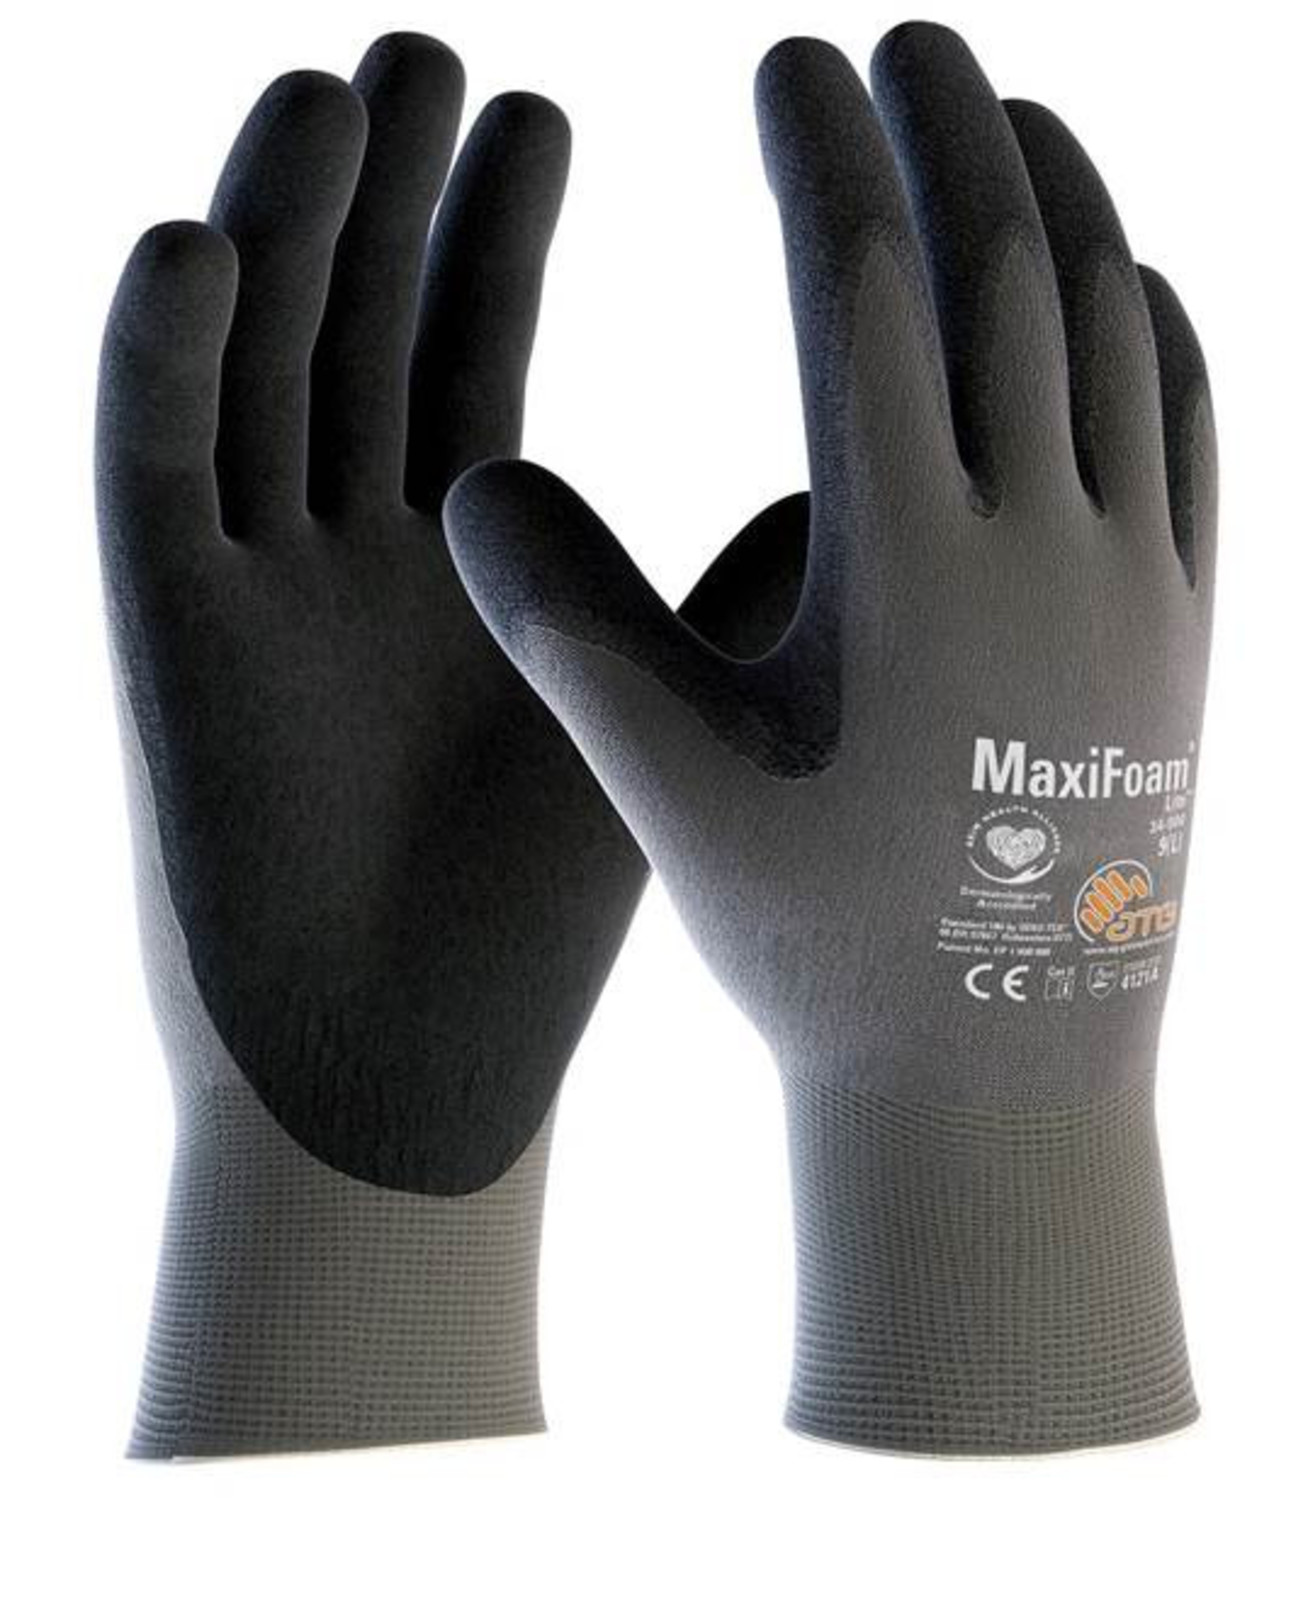 Pracovné rukavice ATG MaxiFoam LITE 34-900 - veľkosť: 10/XL, farba: sivá